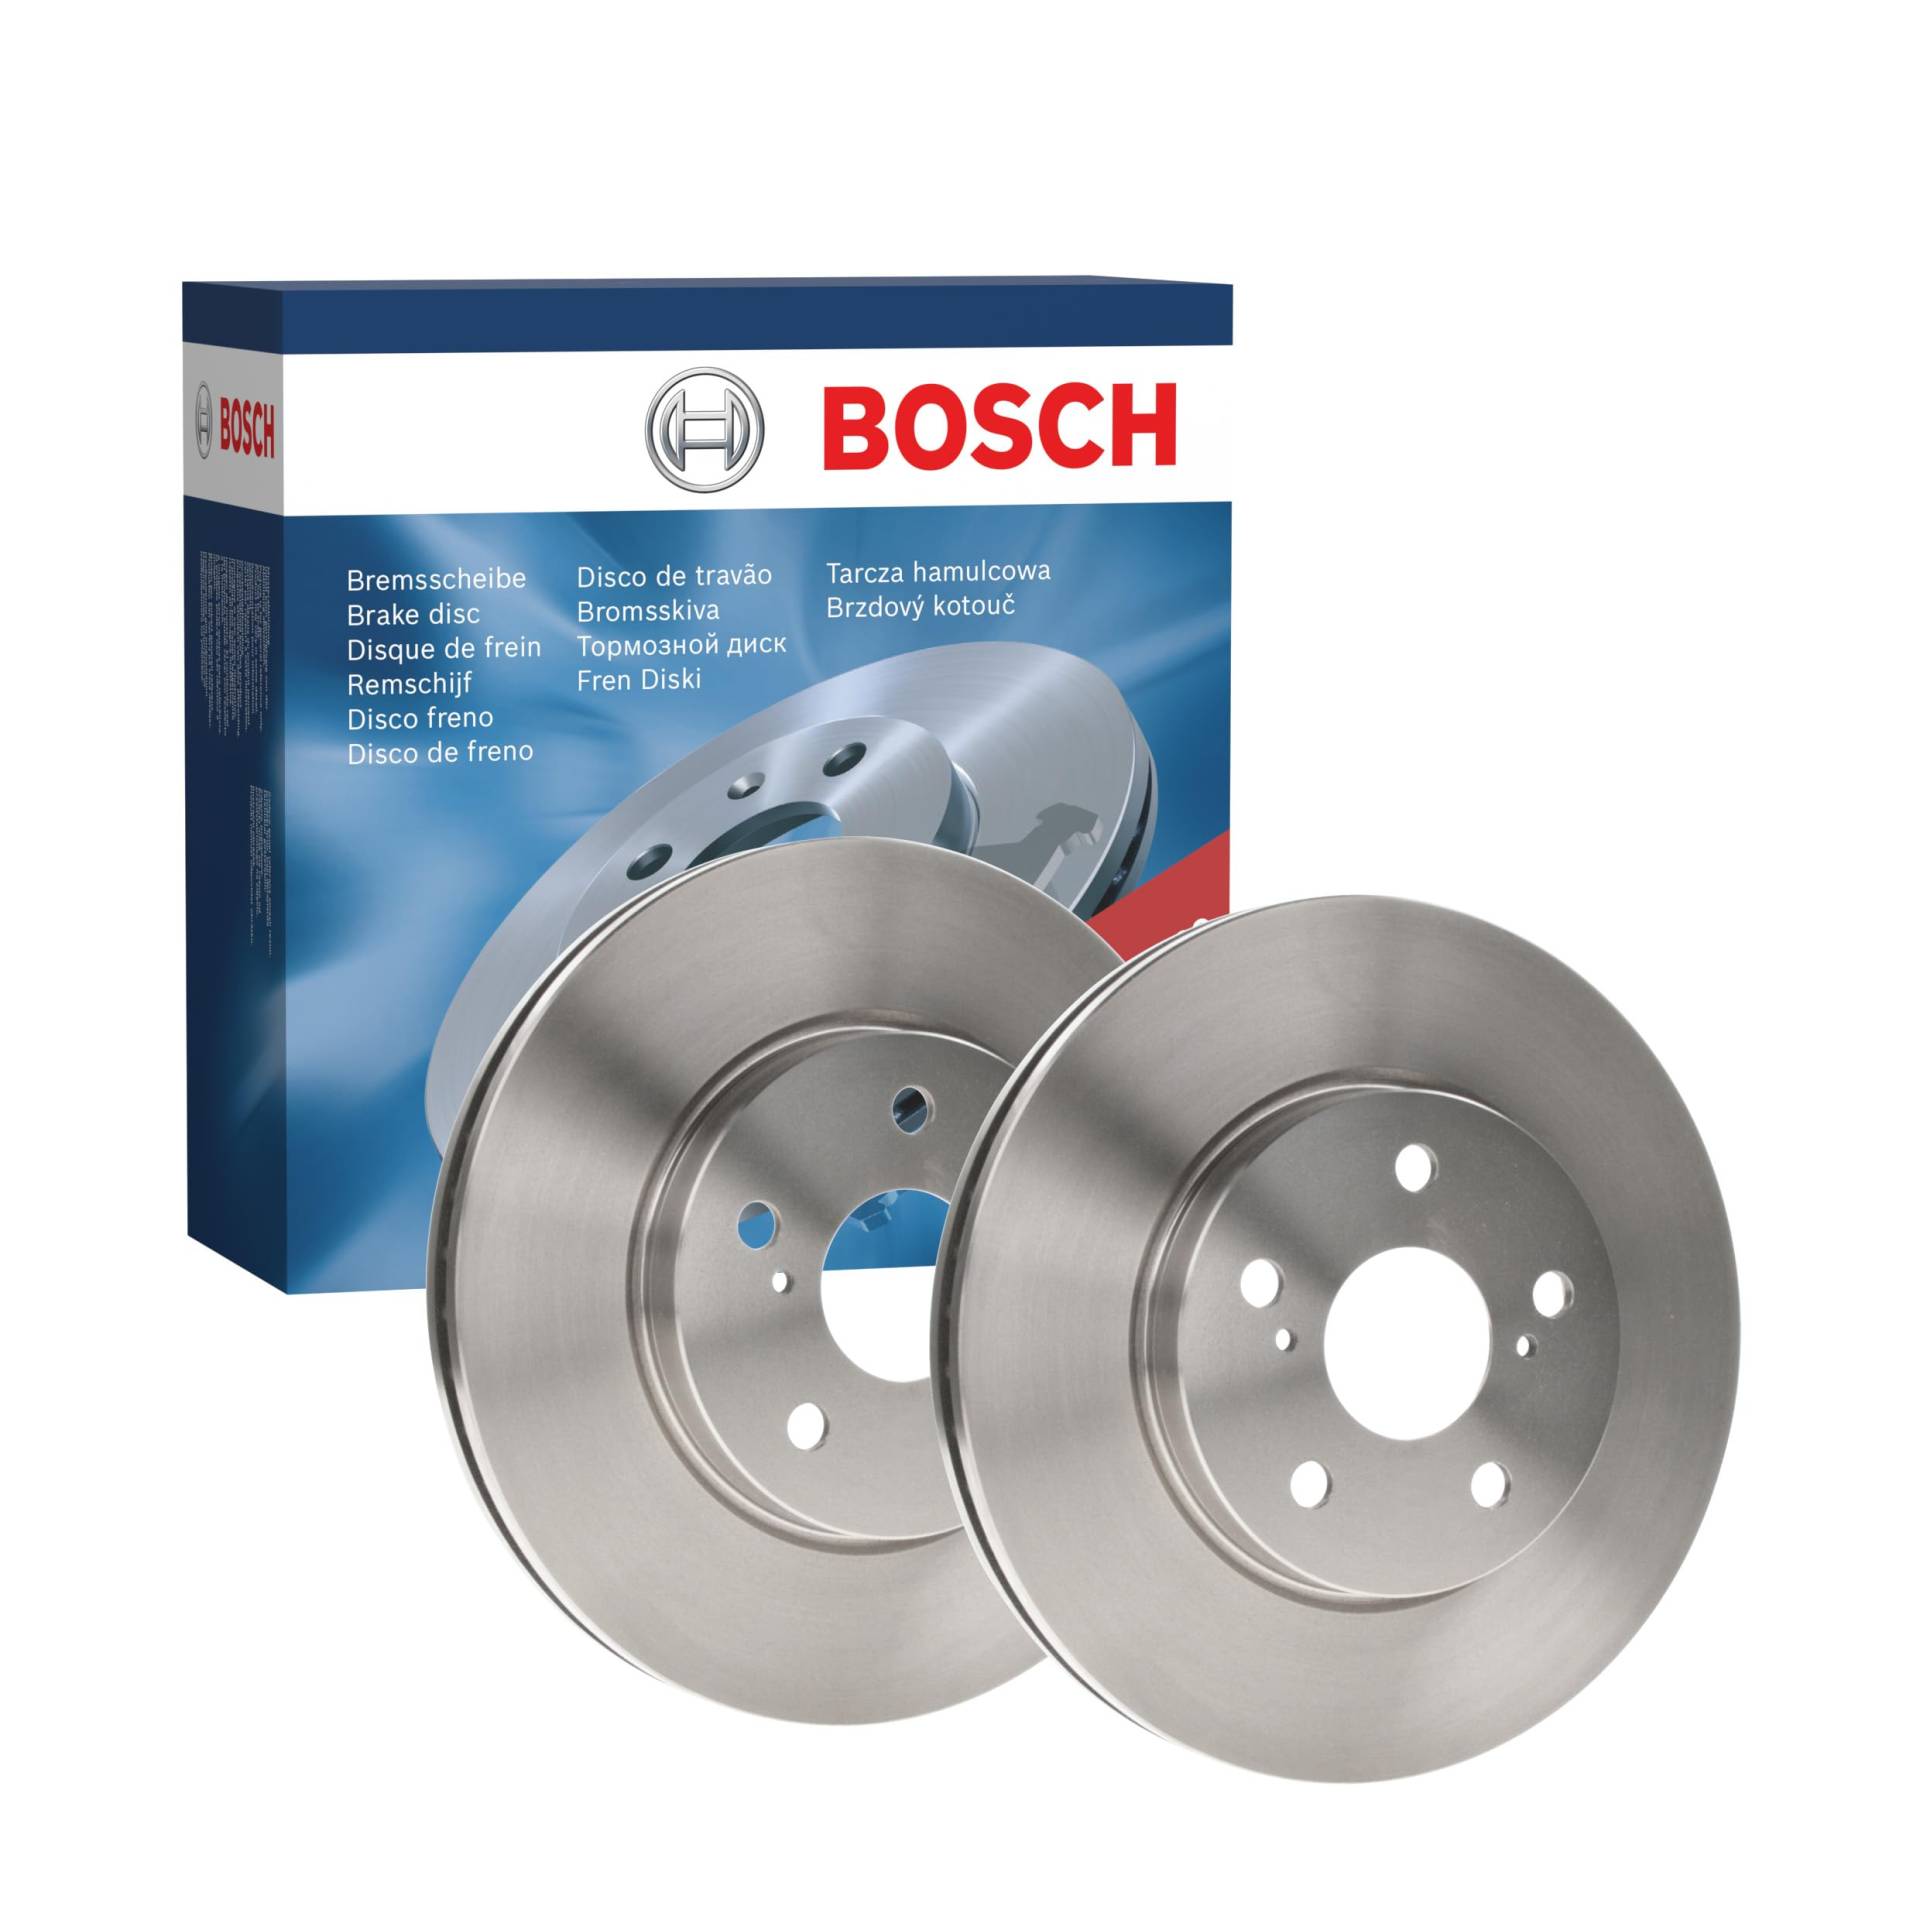 Bosch BD866 Bremsscheiben - Vorderachse - ECE-R90 Zertifizierung - zwei Bremsscheiben pro Set von Bosch Automotive